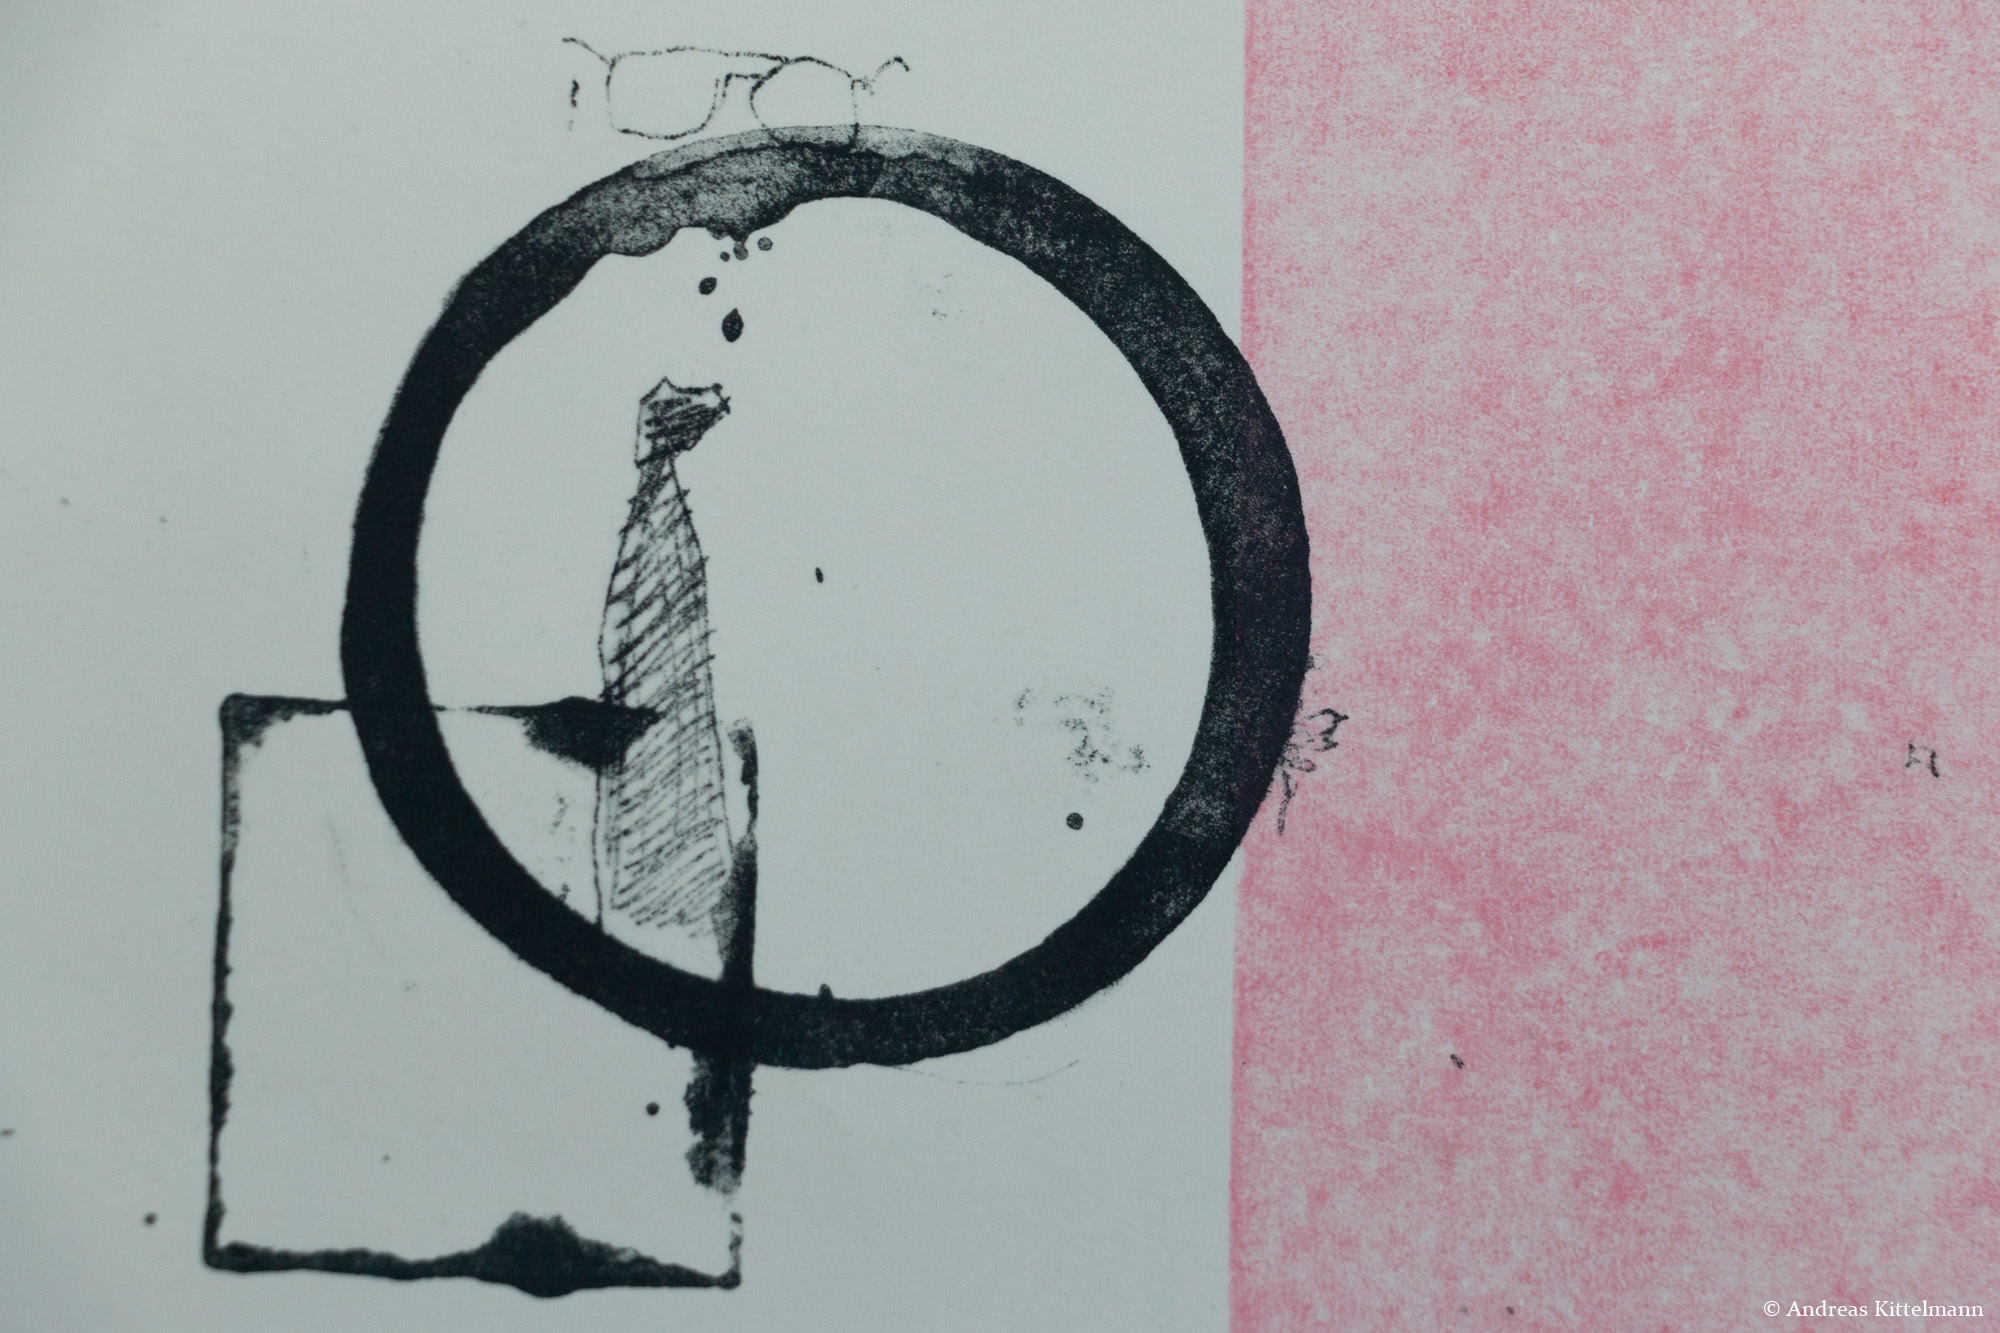 Cornel Entfellner, Akzentuierung der Gesellschaft als Erinnerung & Rückstände (Detail), 2019, Lithographie & Linolschnitt, ca. 44 x 50 cm, II/VII